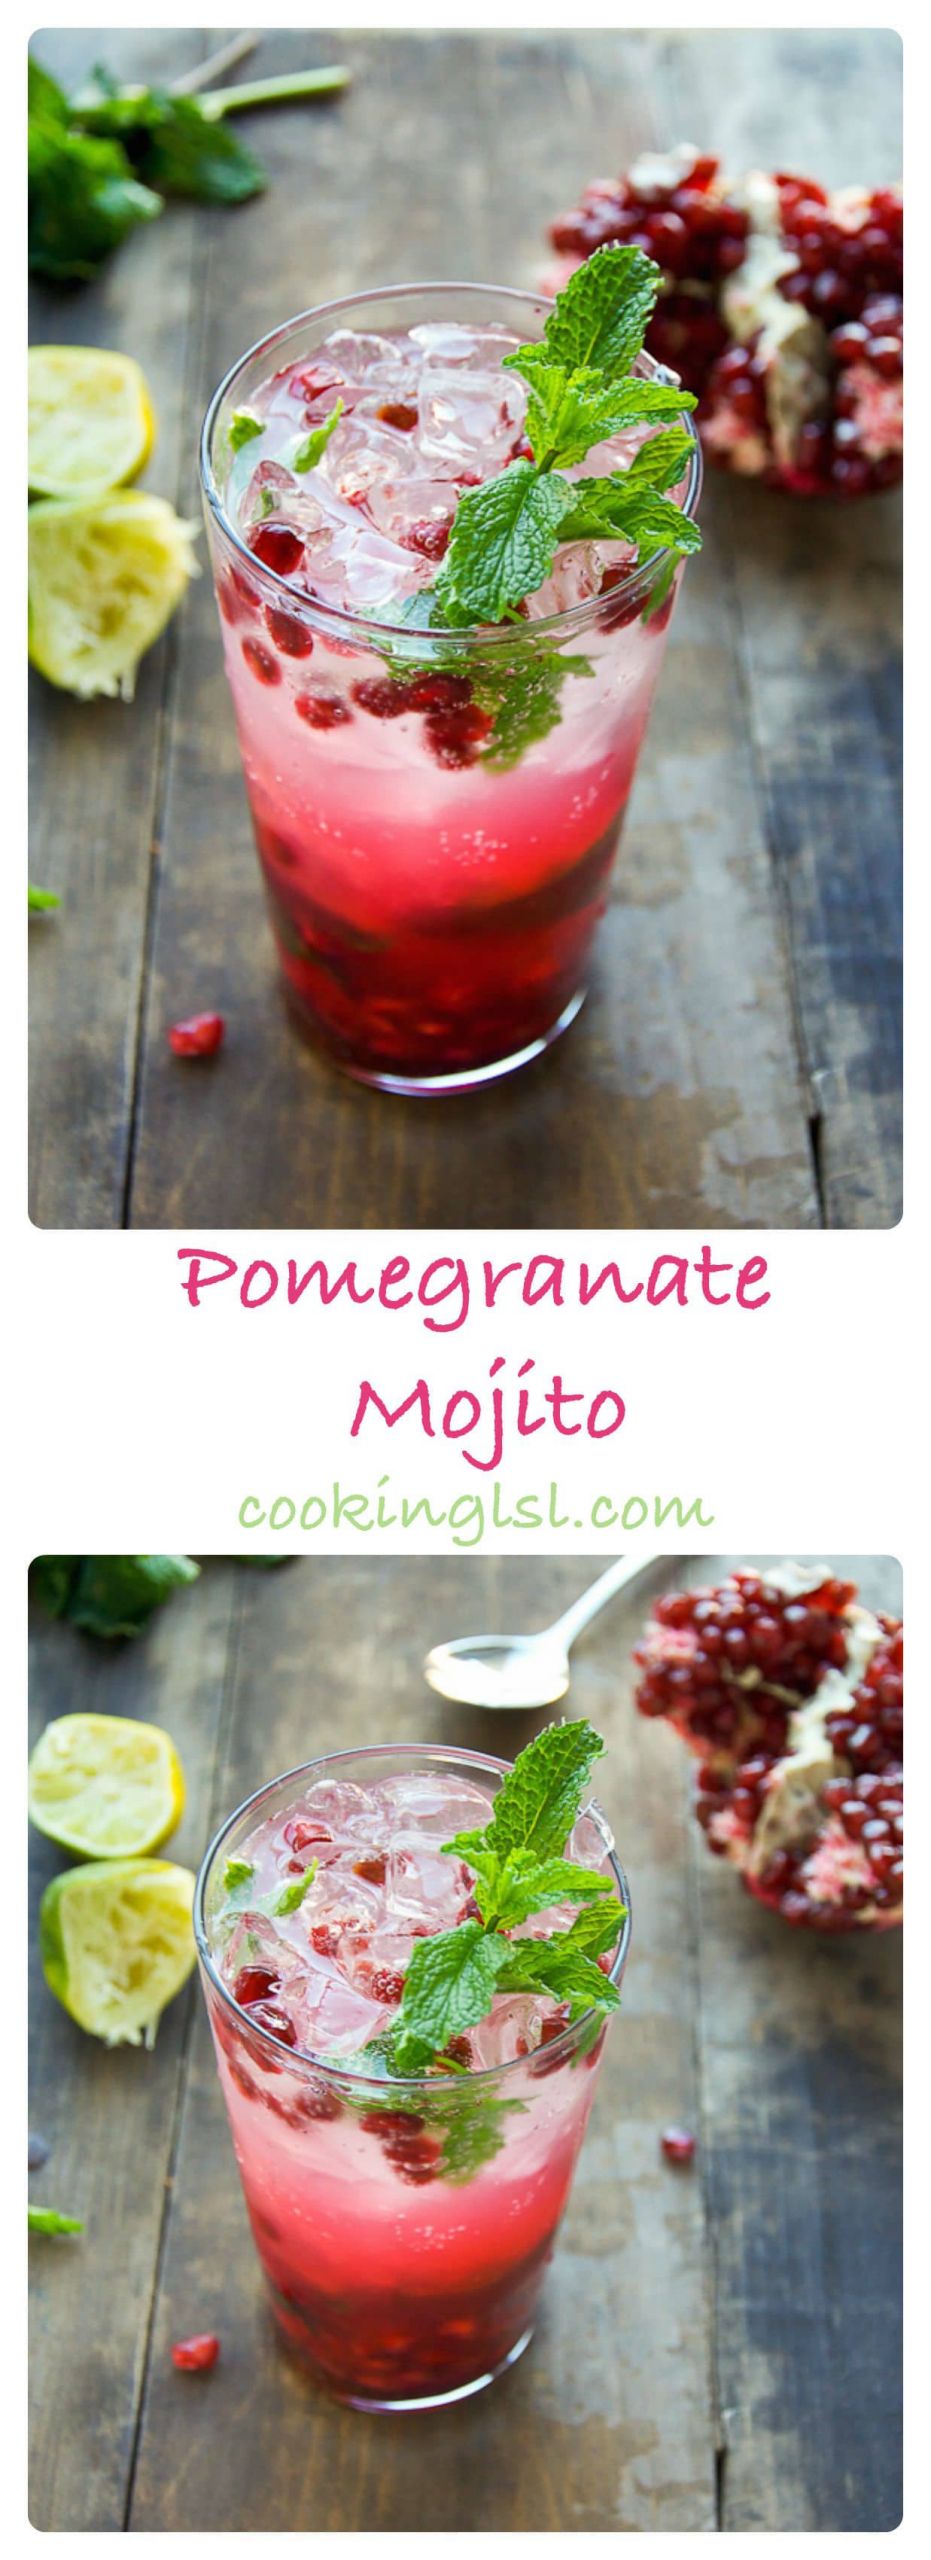 Pomegranate Cocktails Recipes
 Pomegranate Mojito Cocktail